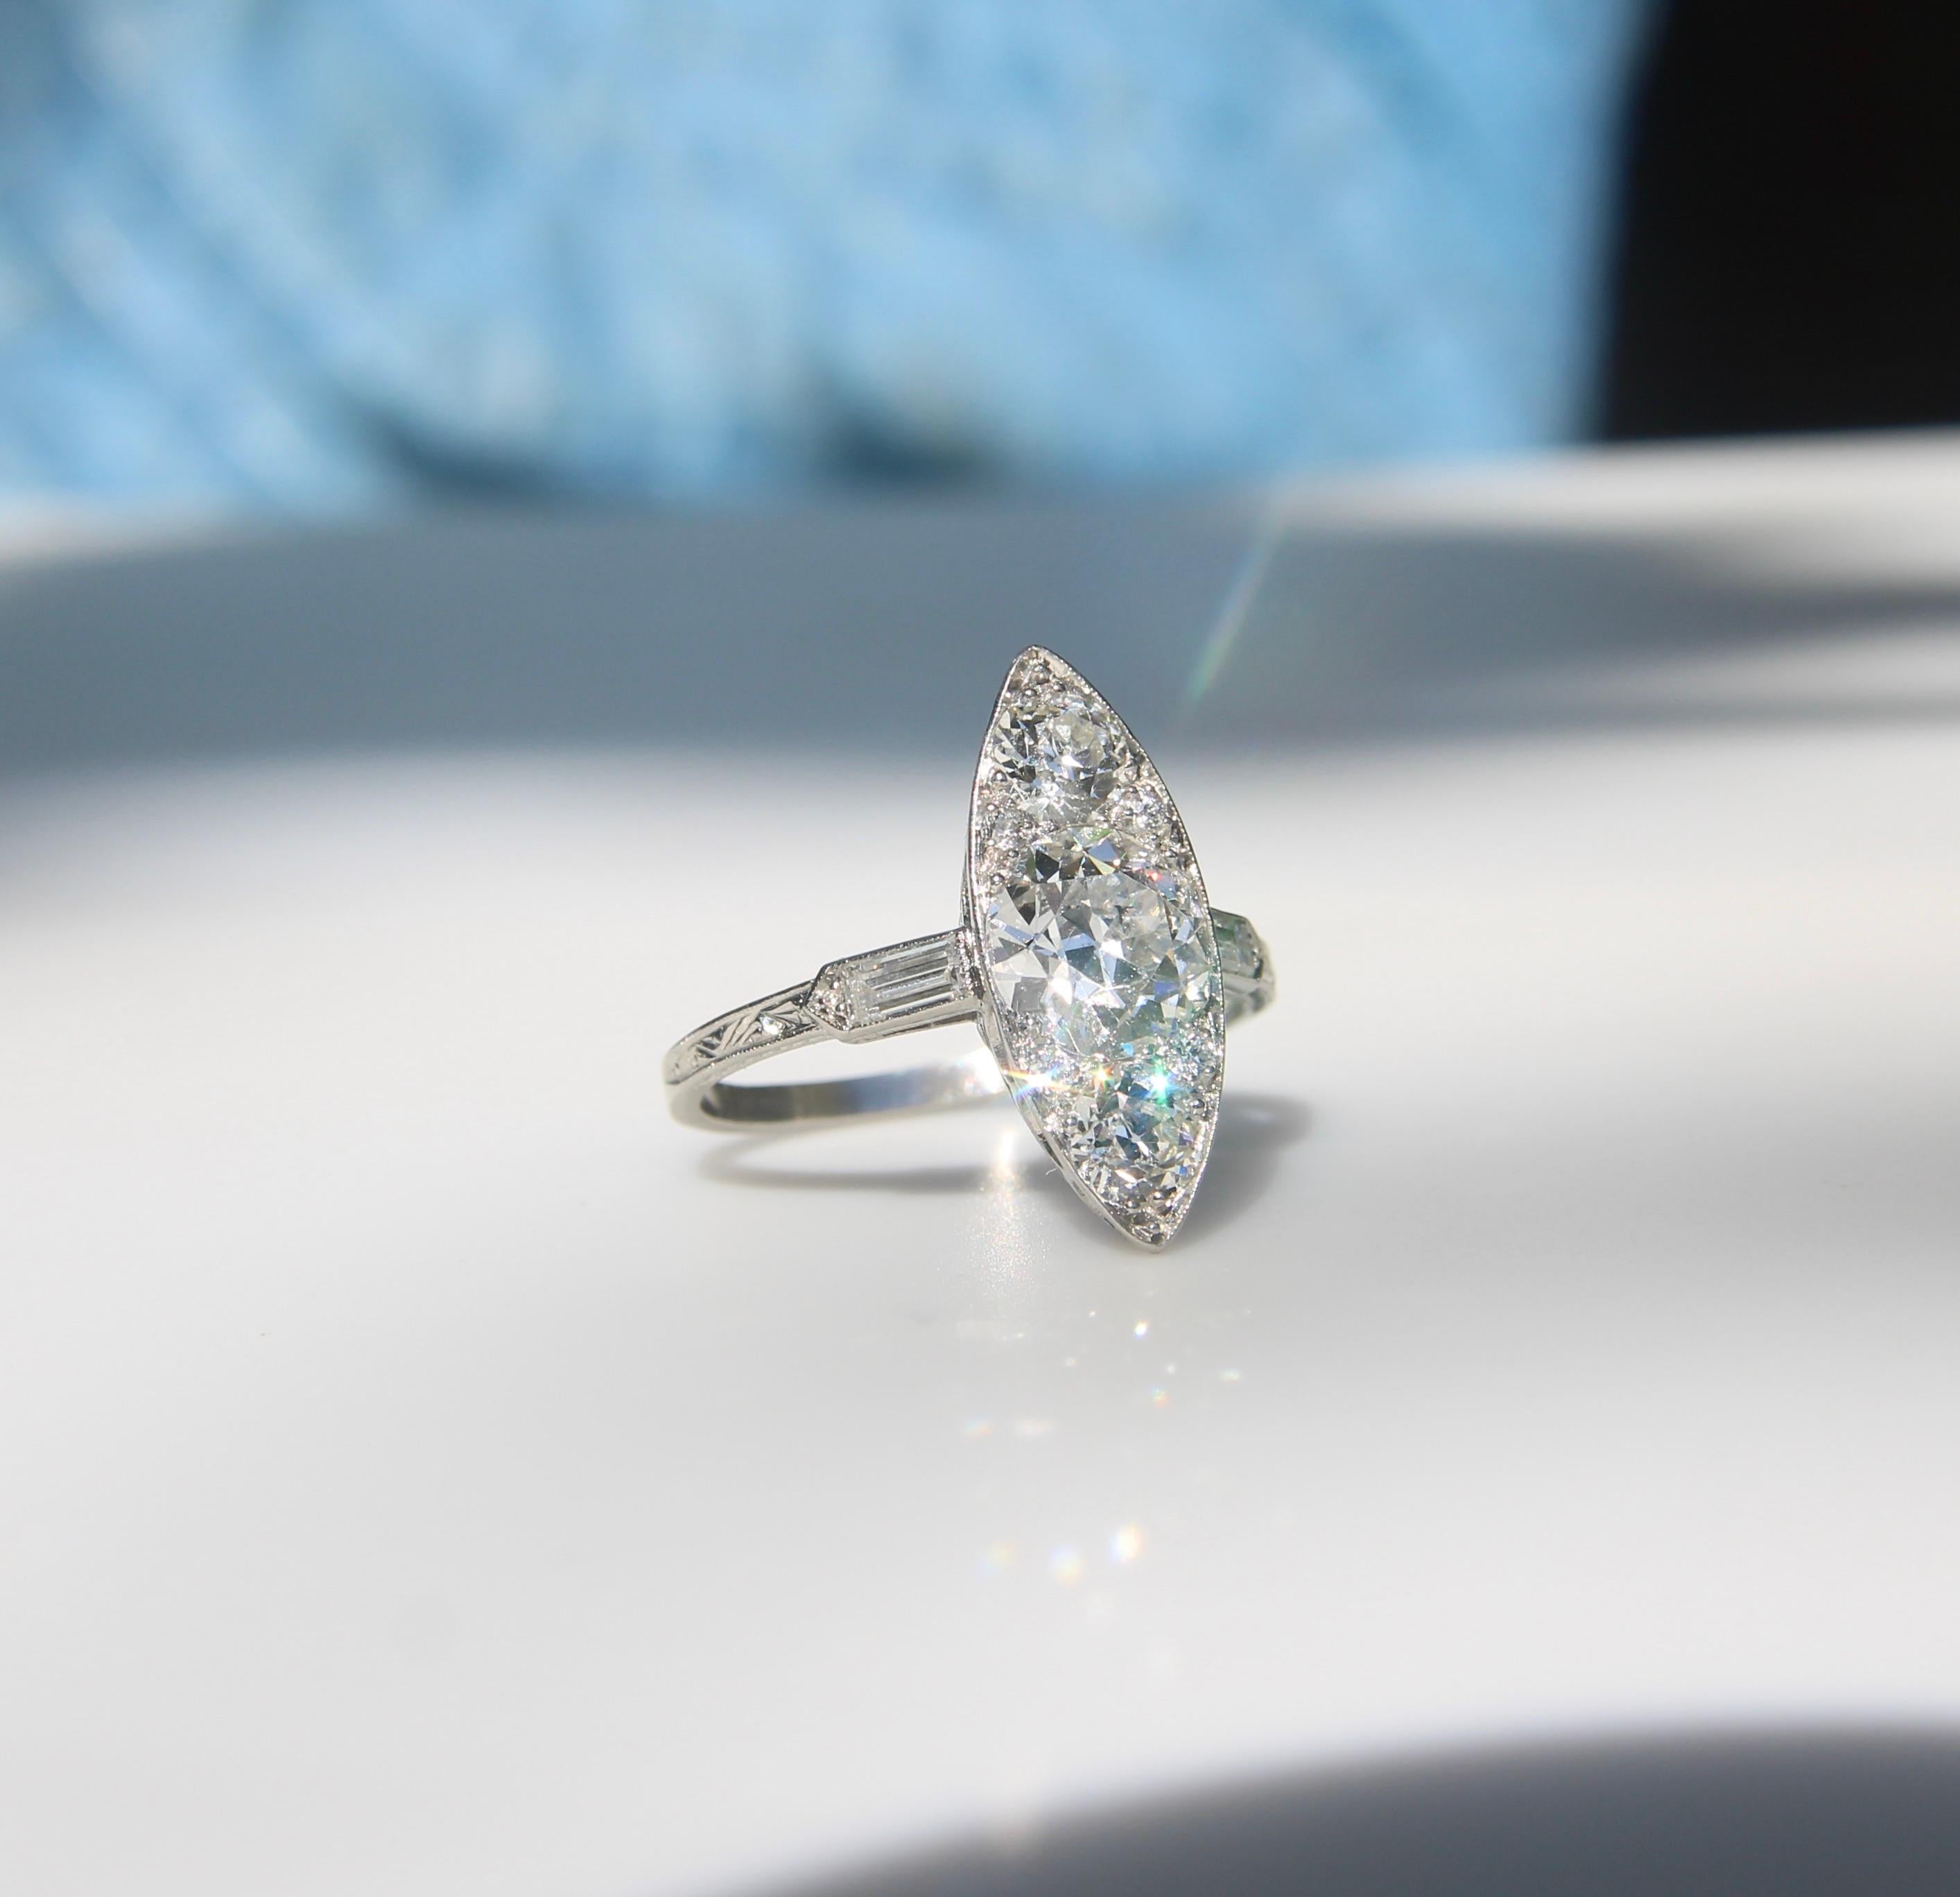 Dieser atemberaubende edwardianische Diamant-Verlobungsring besteht aus etwa 2,5 Karat Diamanten im Old European Cut. Die Diamanten sind strategisch in die Navette-Form gepackt, was den Eindruck einer funkelnden Oberfläche erweckt. Die Seiten werden